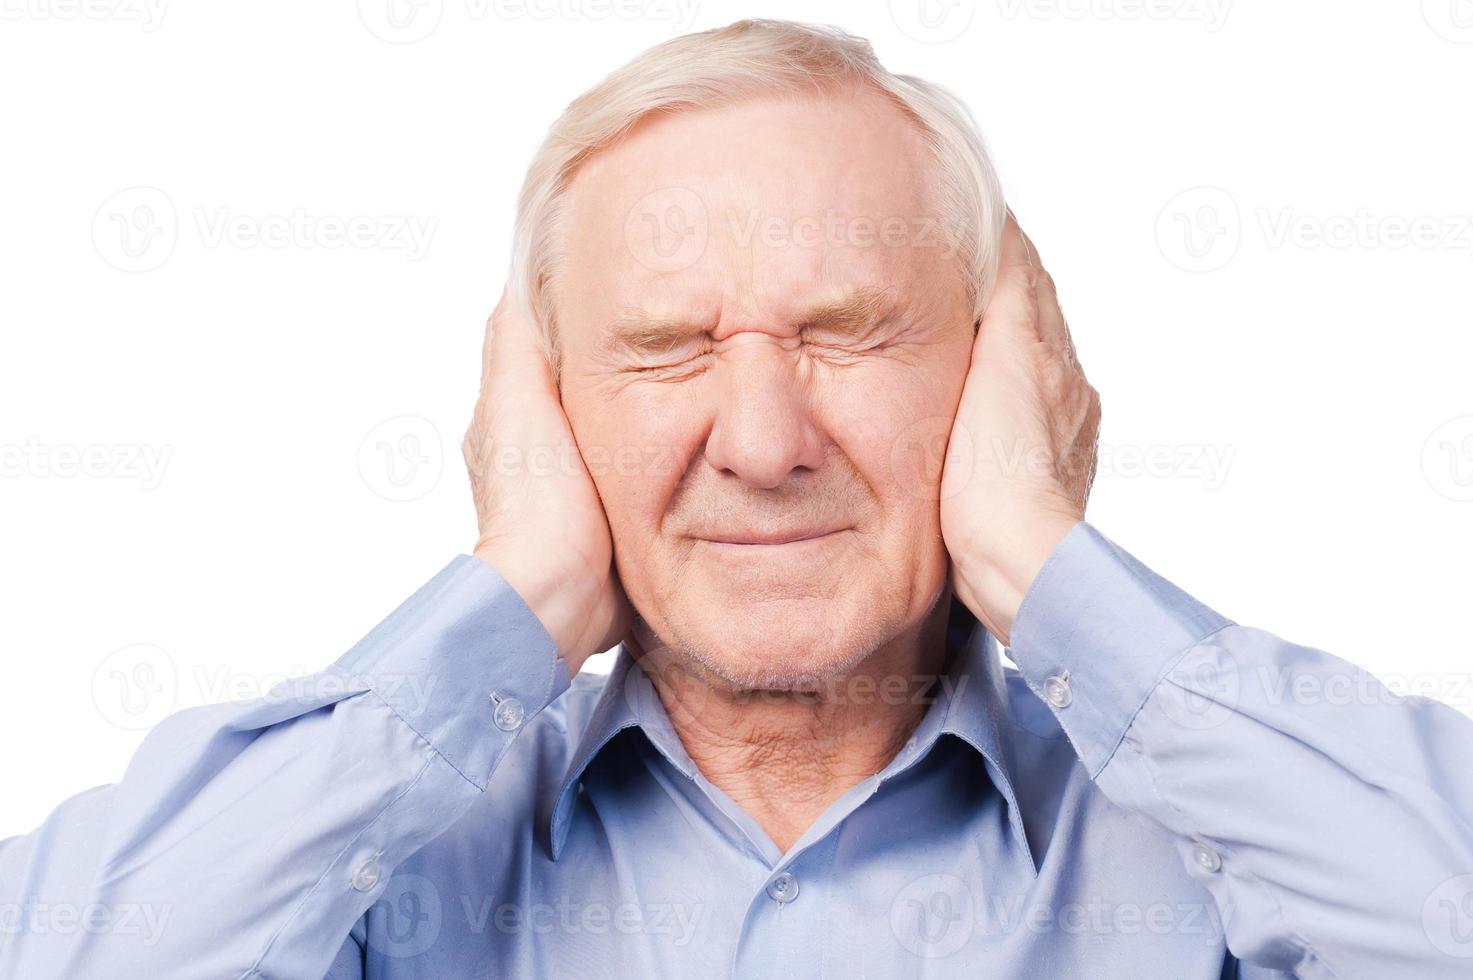 detta är för högt frustrerad senior man i skjorta innehav huvud i händer och förvaring ögon stängd medan stående mot vit bakgrund foto